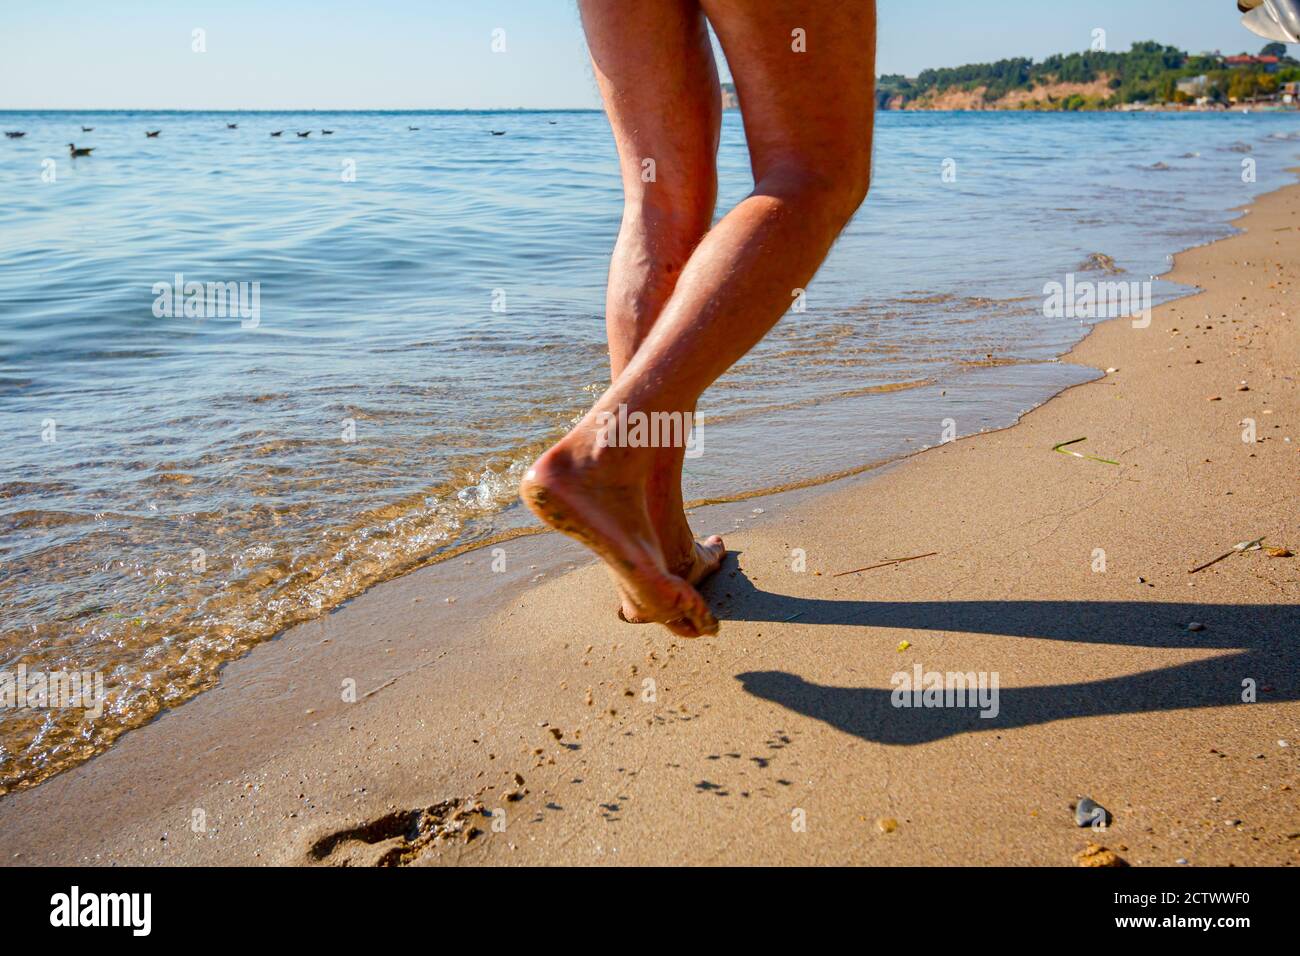 Le gambe dell'uomo camminano a piedi nudi sulla spiaggia di sabbia accanto alle acque poco profonde del mare. Foto Stock